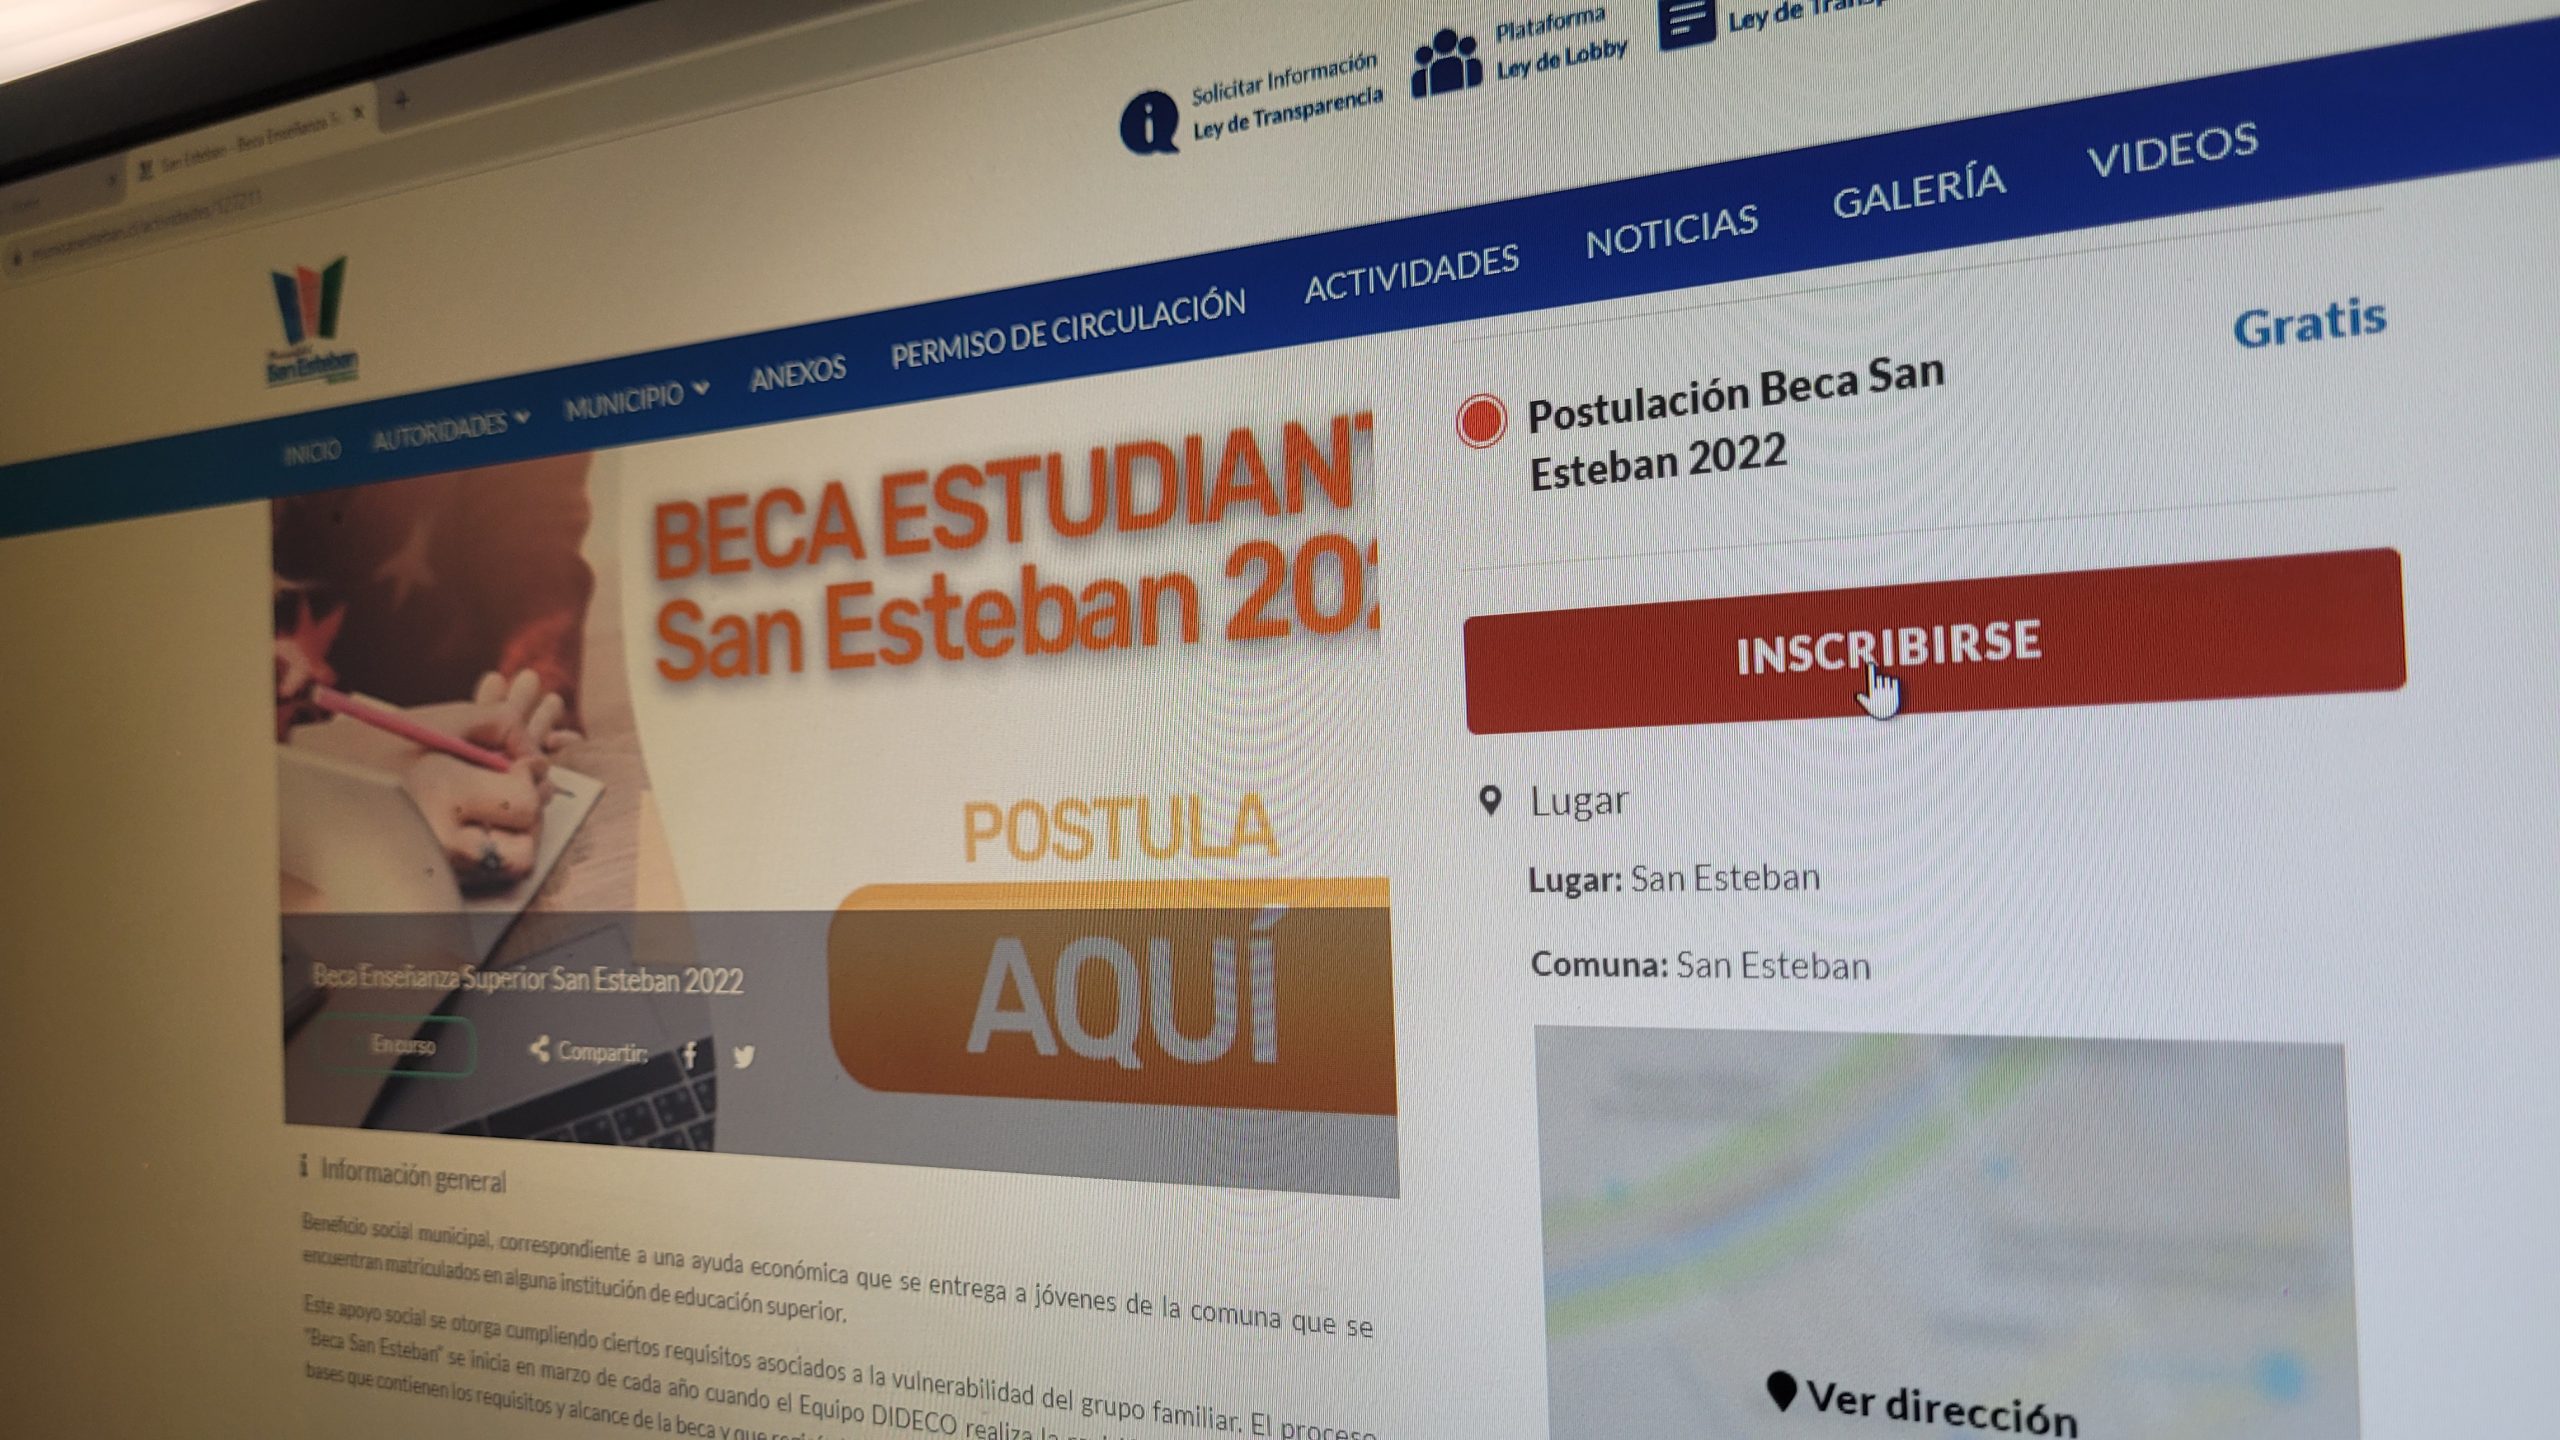 SAN ESTEBAN:  150 vecinas y vecinos han postulado a las becas municipales deportiva y de educación superior en San Esteban